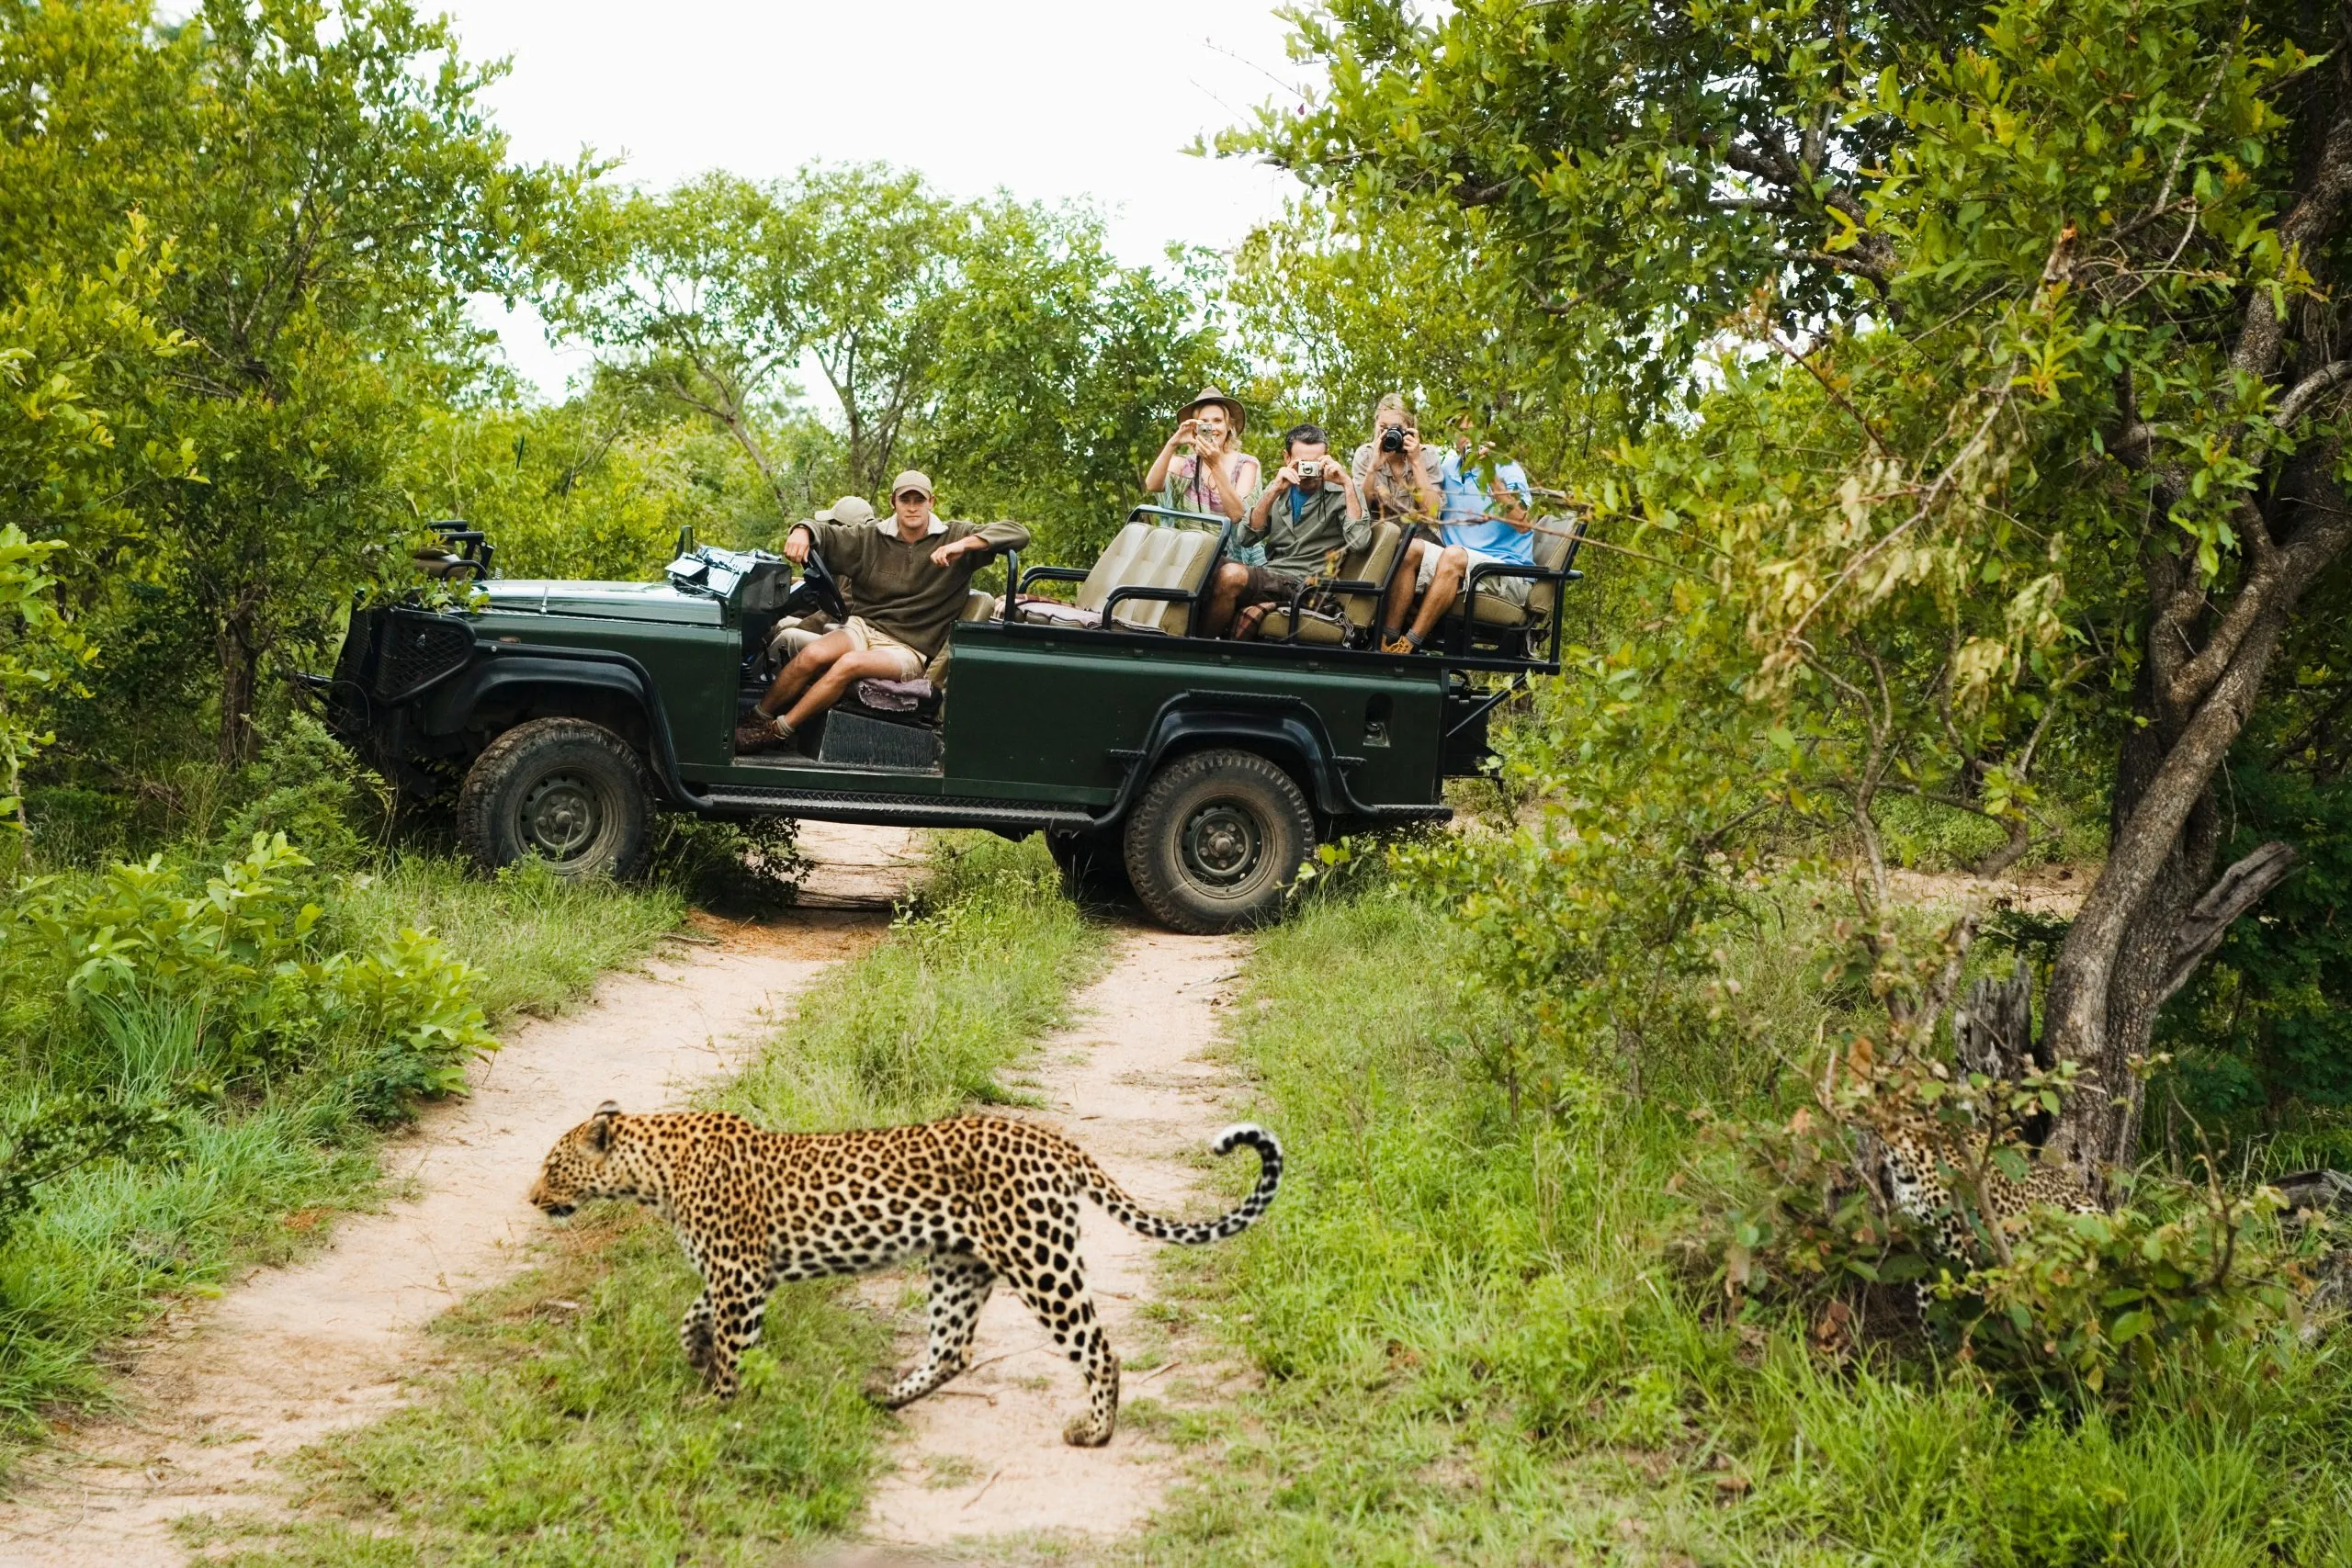 Leopardo a atravessar a estrada com turistas em pano de fundo